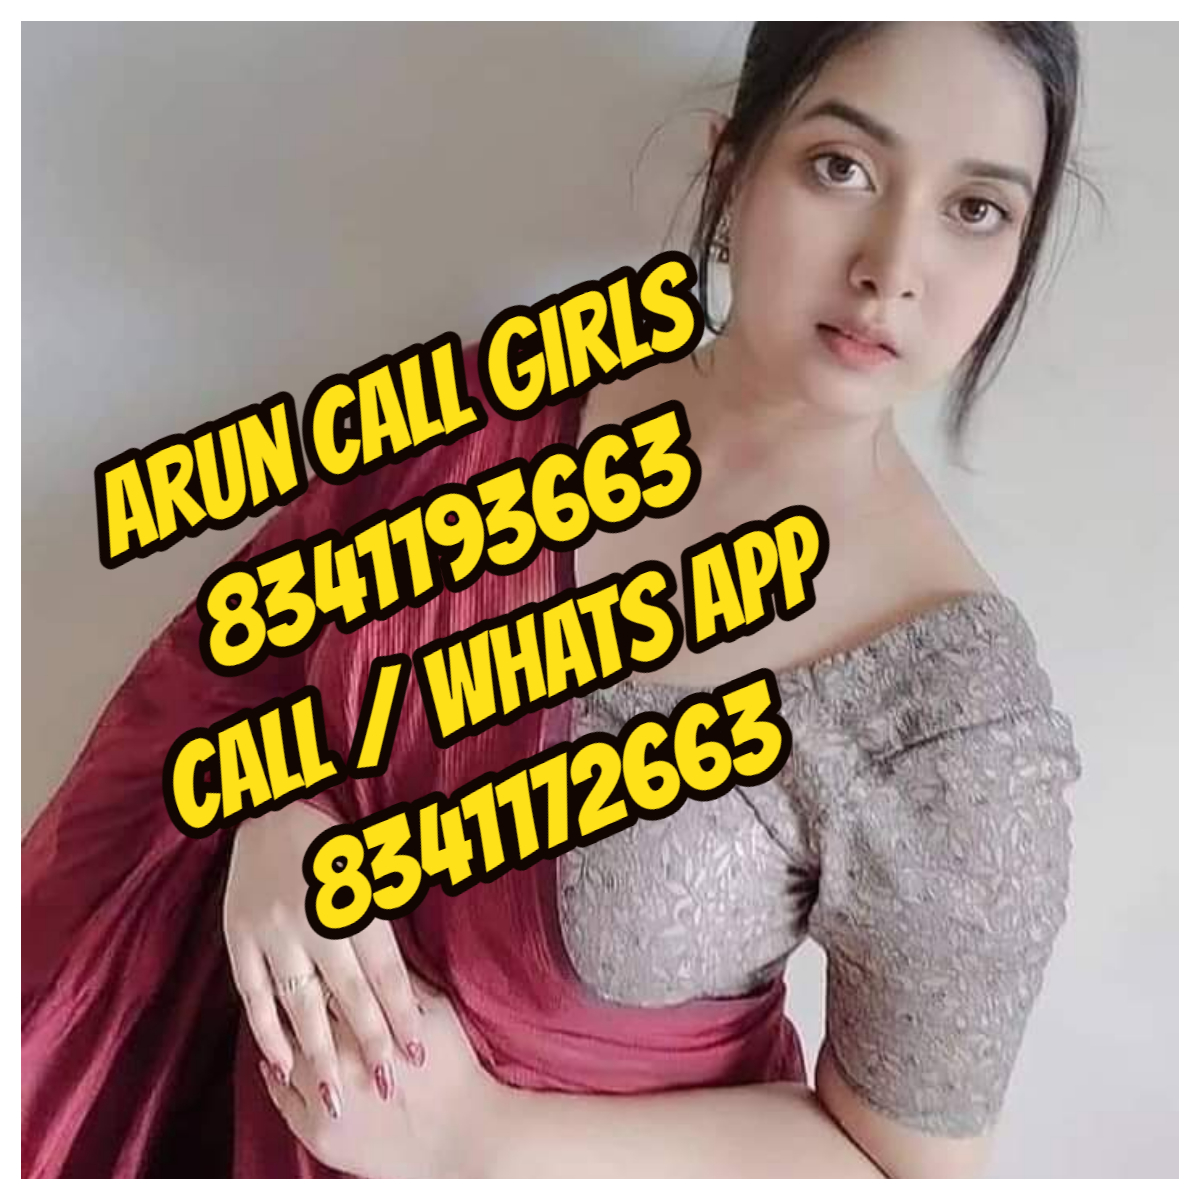 Call girls in Coimbatore